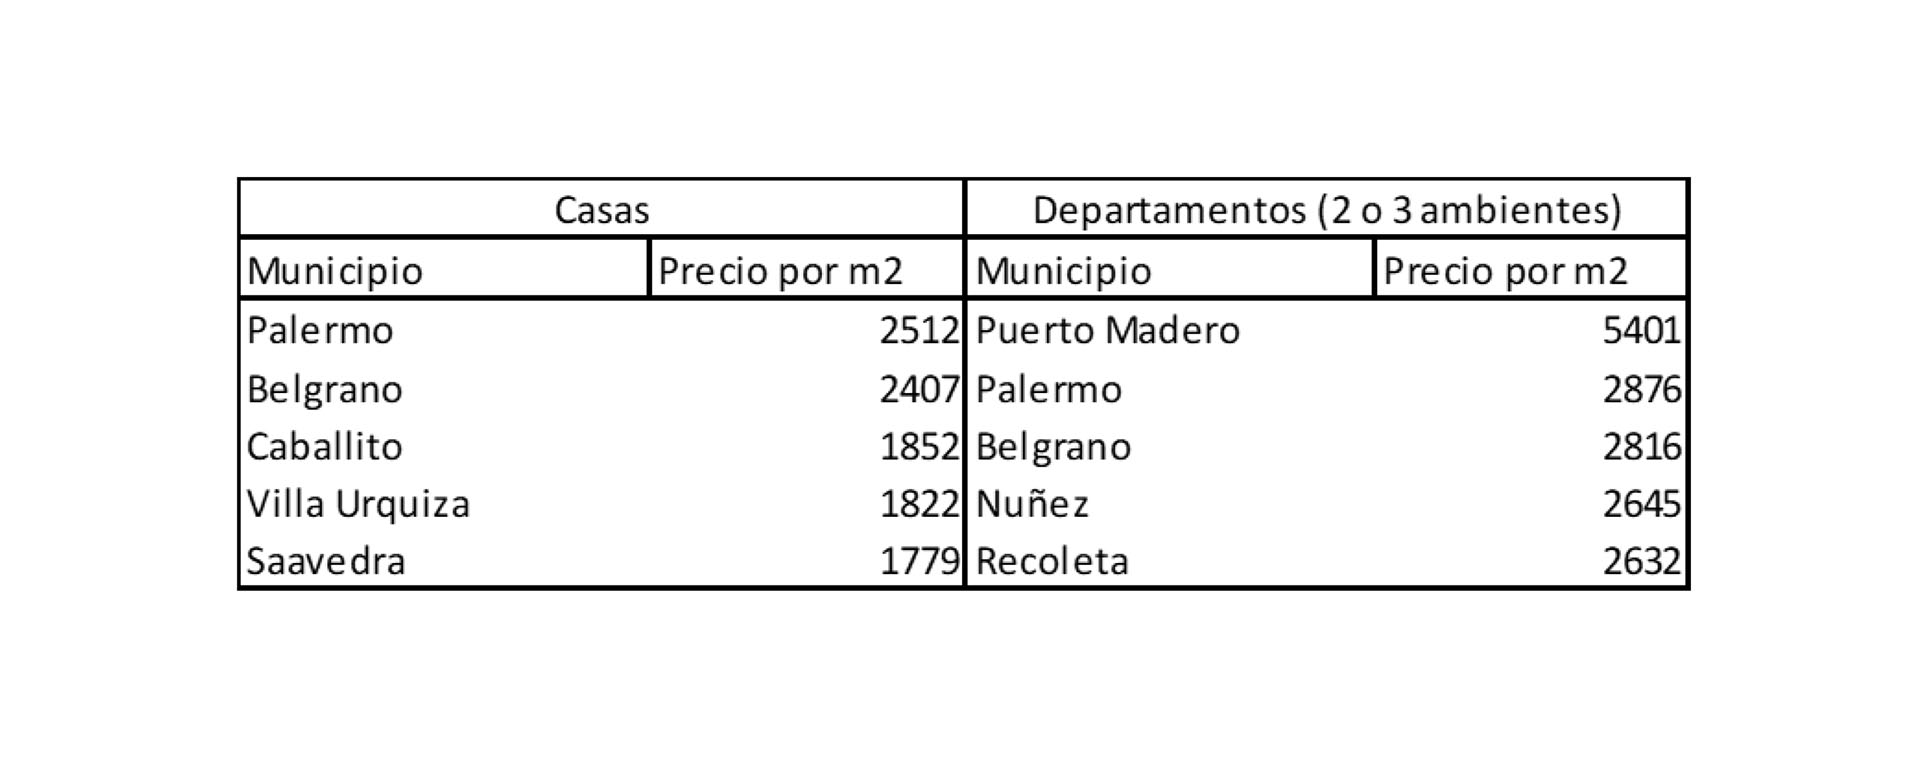 Aquí los precios por m2 en casas y departamentos que lideran el ranking en Buenos Aires